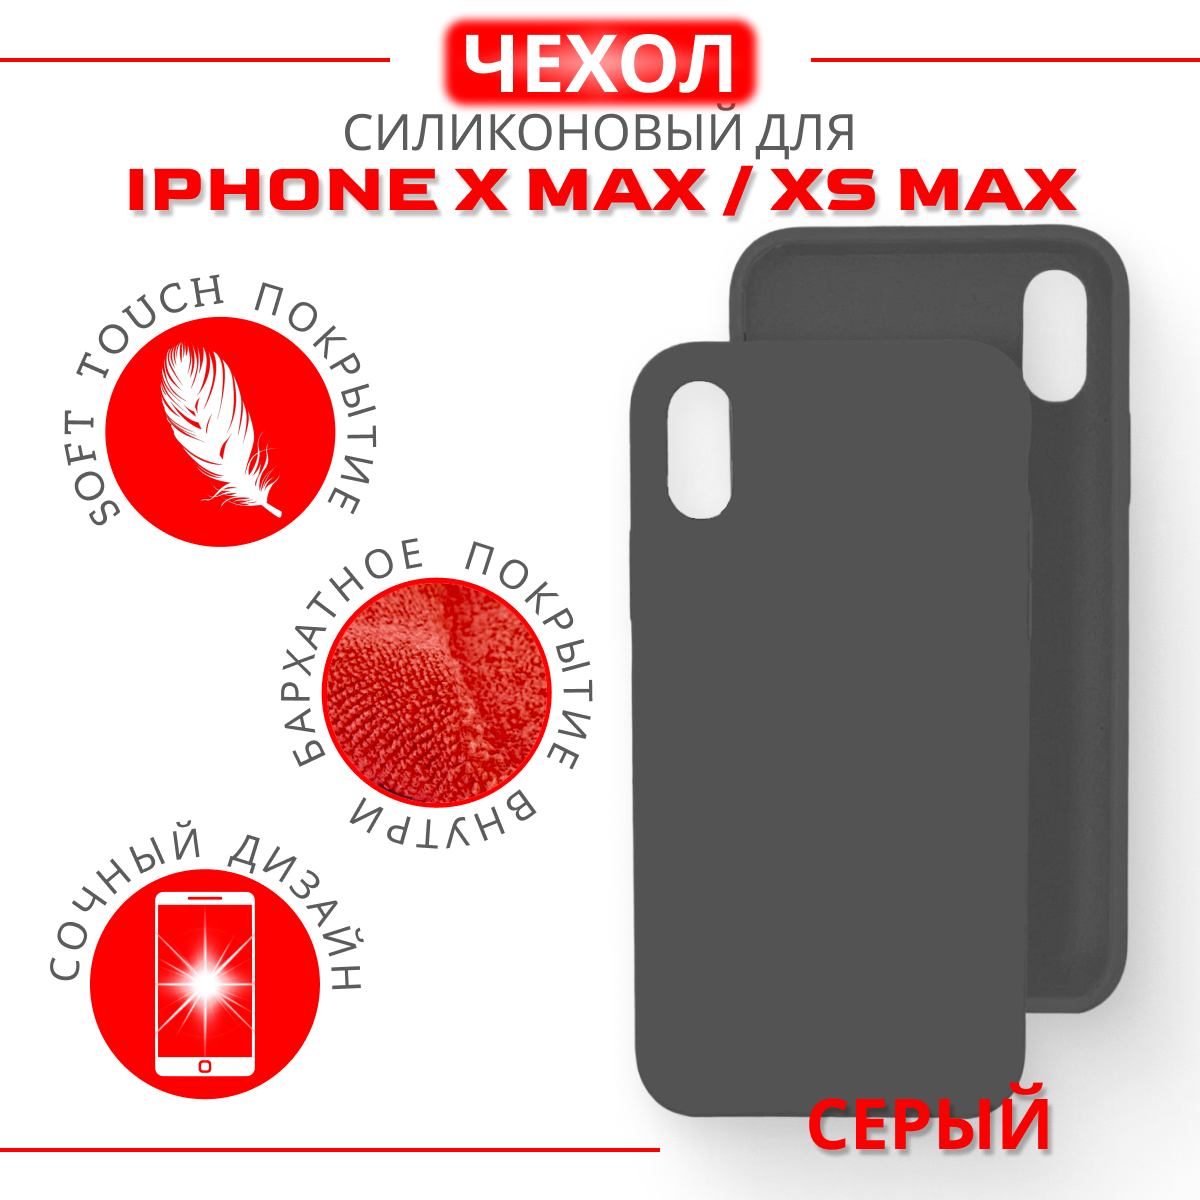 Чехол силиконовый для iPhone X Max/XS Max, Soft Touch покрытие, серый